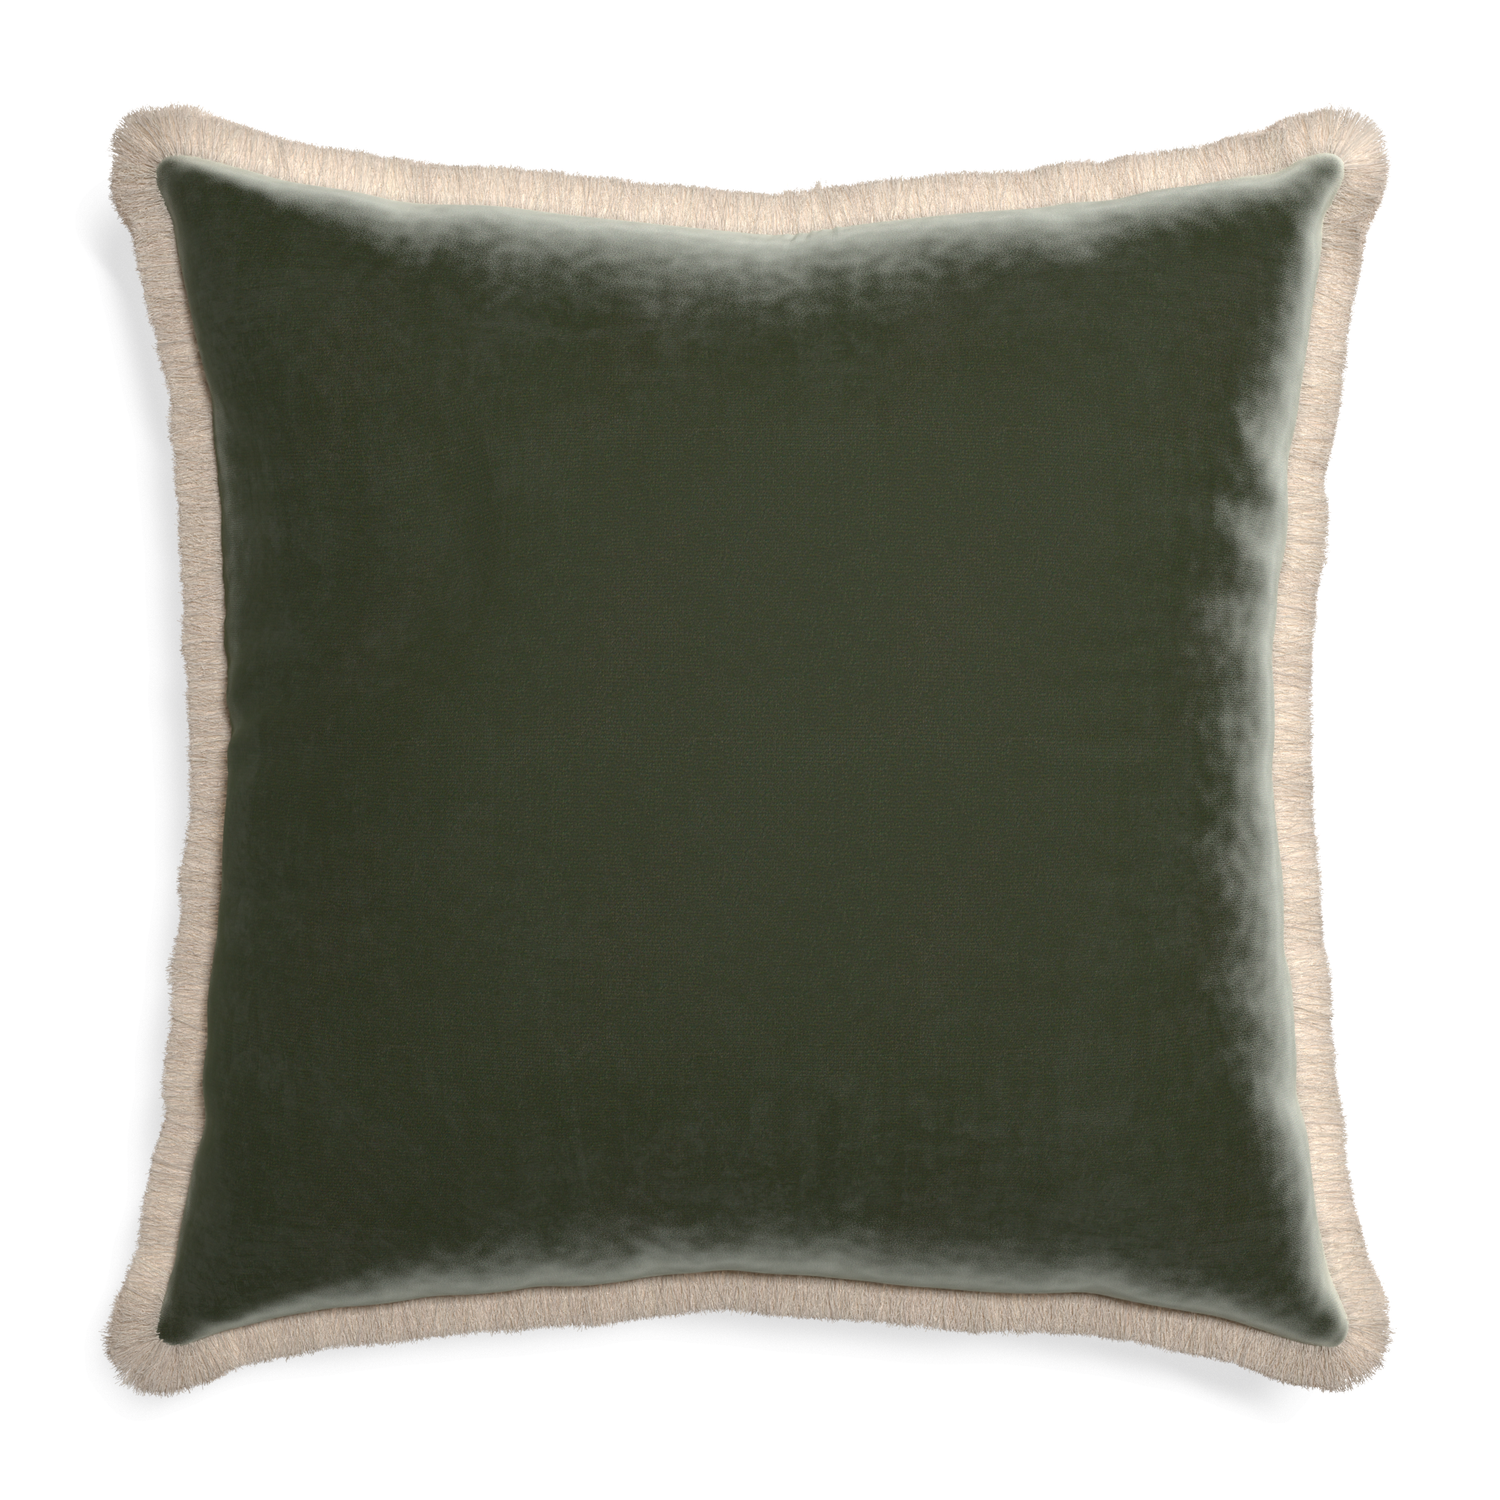 Euro-sham fern velvet custom pillow with cream fringe on white background